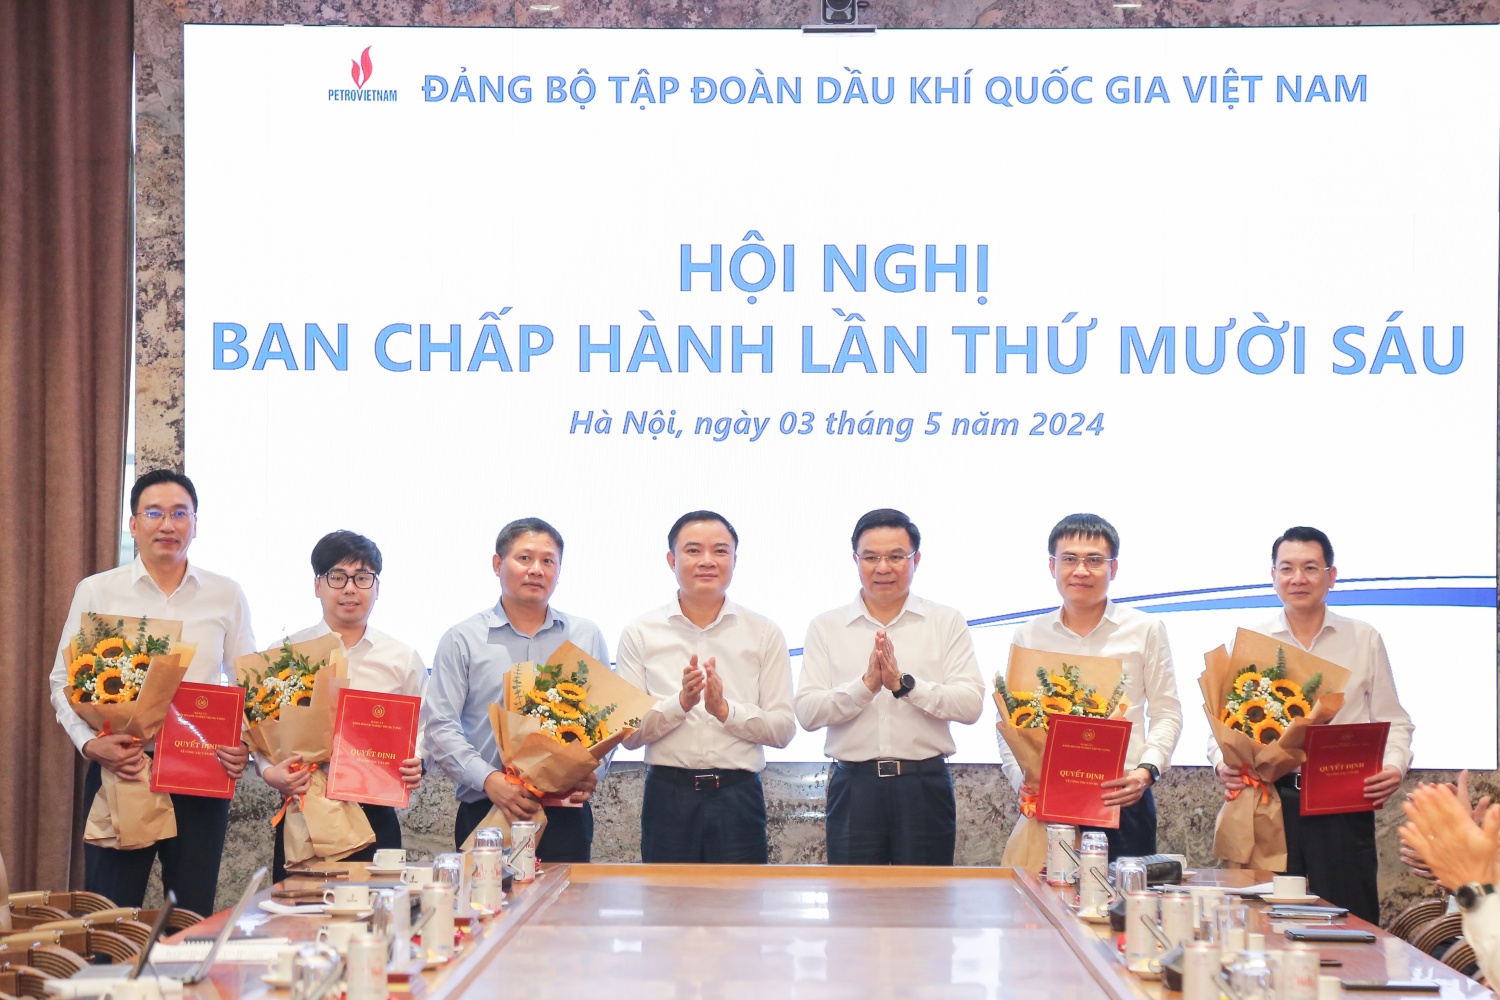 Hội nghị Ban Chấp hành Đảng bộ Tập đoàn Dầu khí Quốc gia Việt Nam lần thứ 16 nhiệm kỳ 2020 - 2025